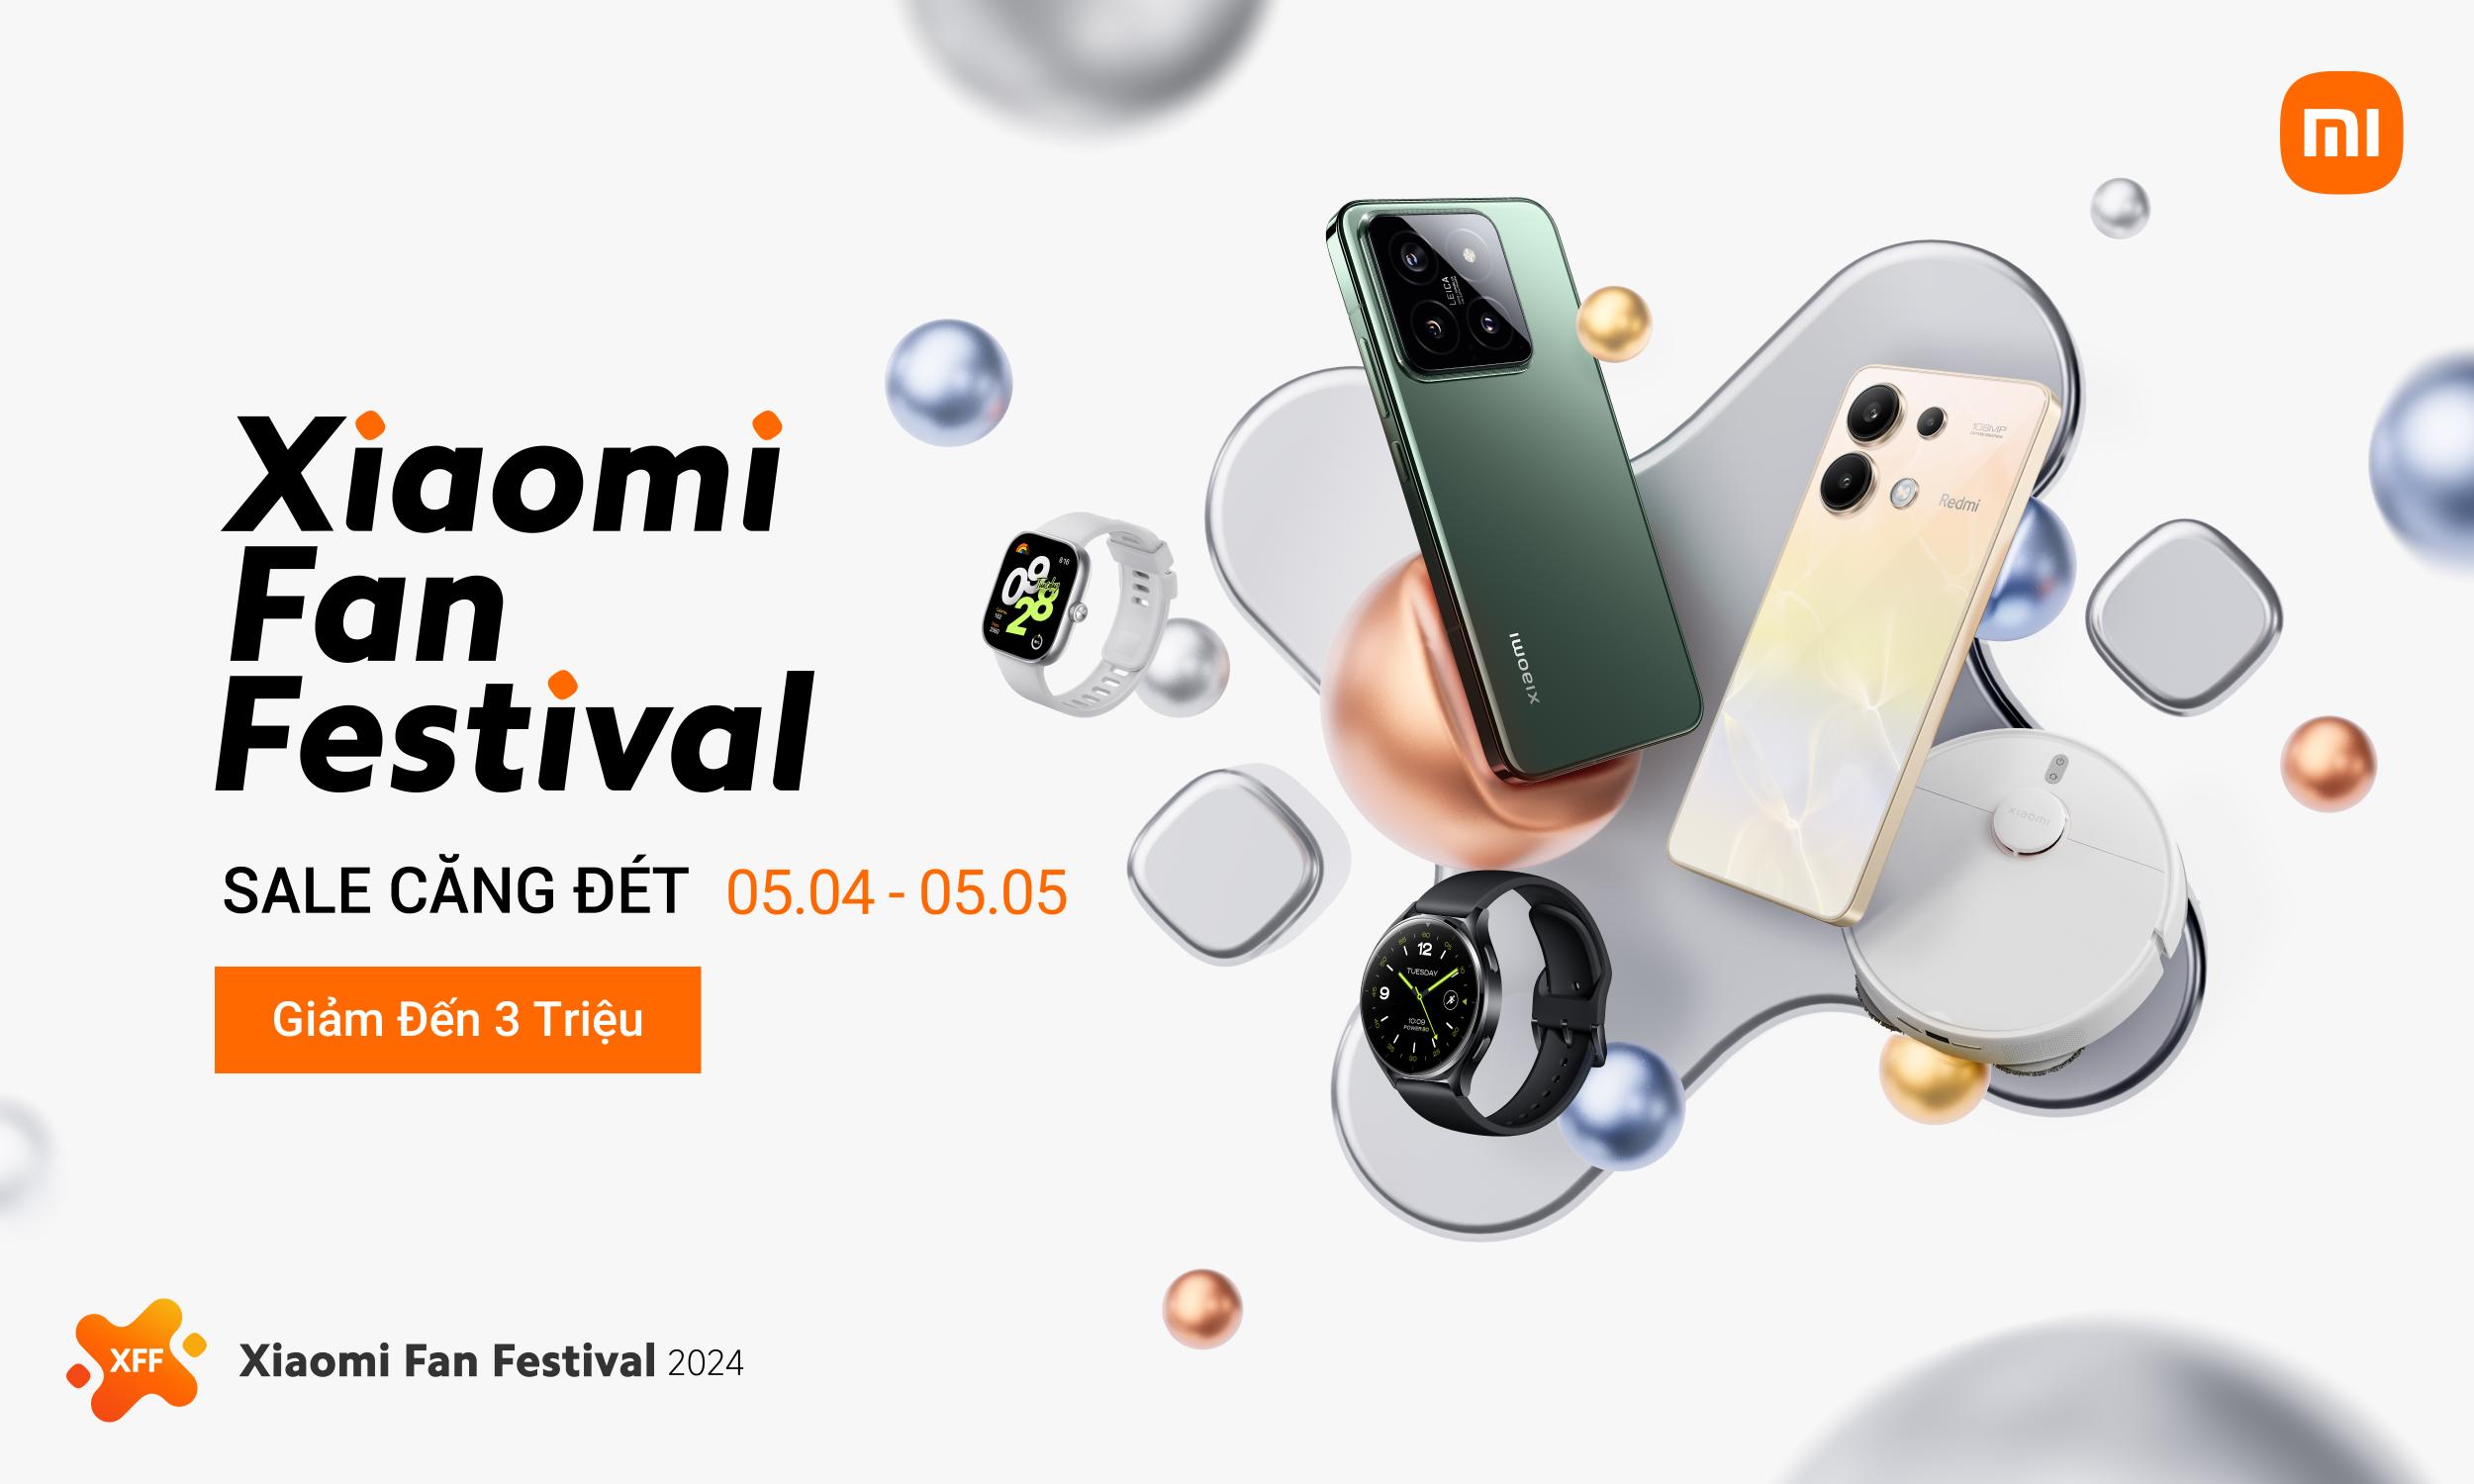 XFF 2024 Xiaomi Fan Festival 2024 khởi động với tổng giá trị quà tặng gần 100 triệu đồng